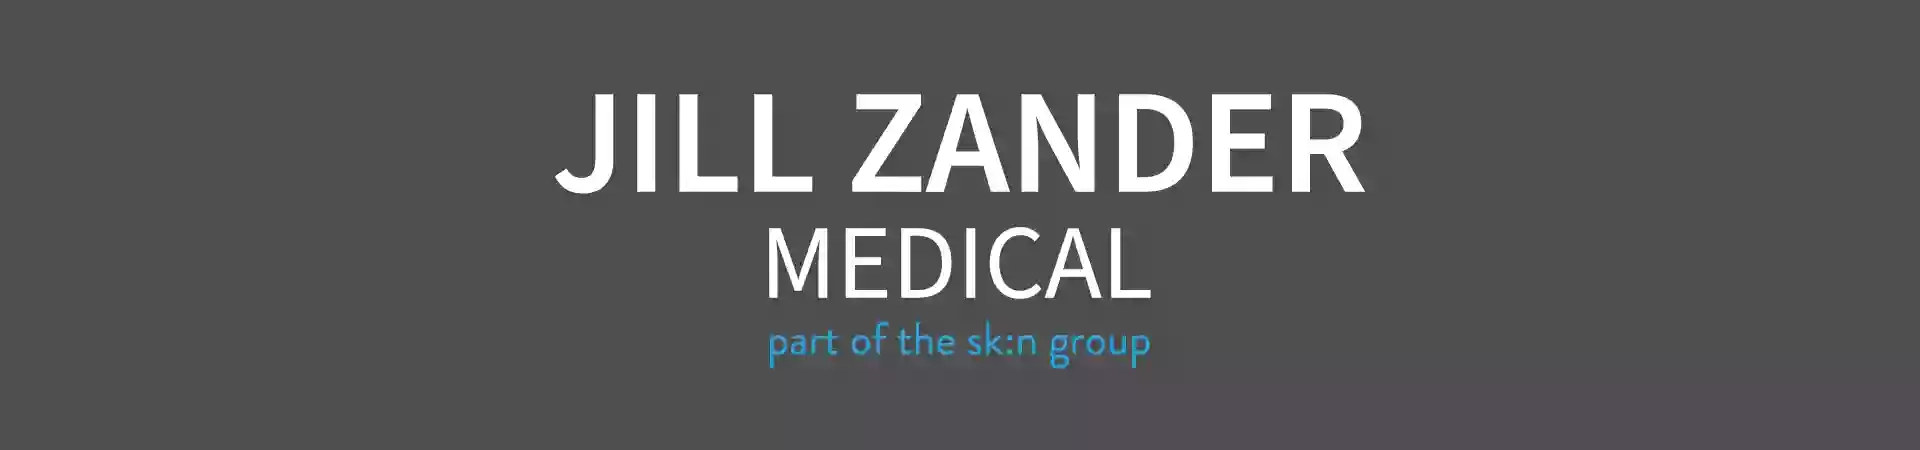 Jill Zander Medical